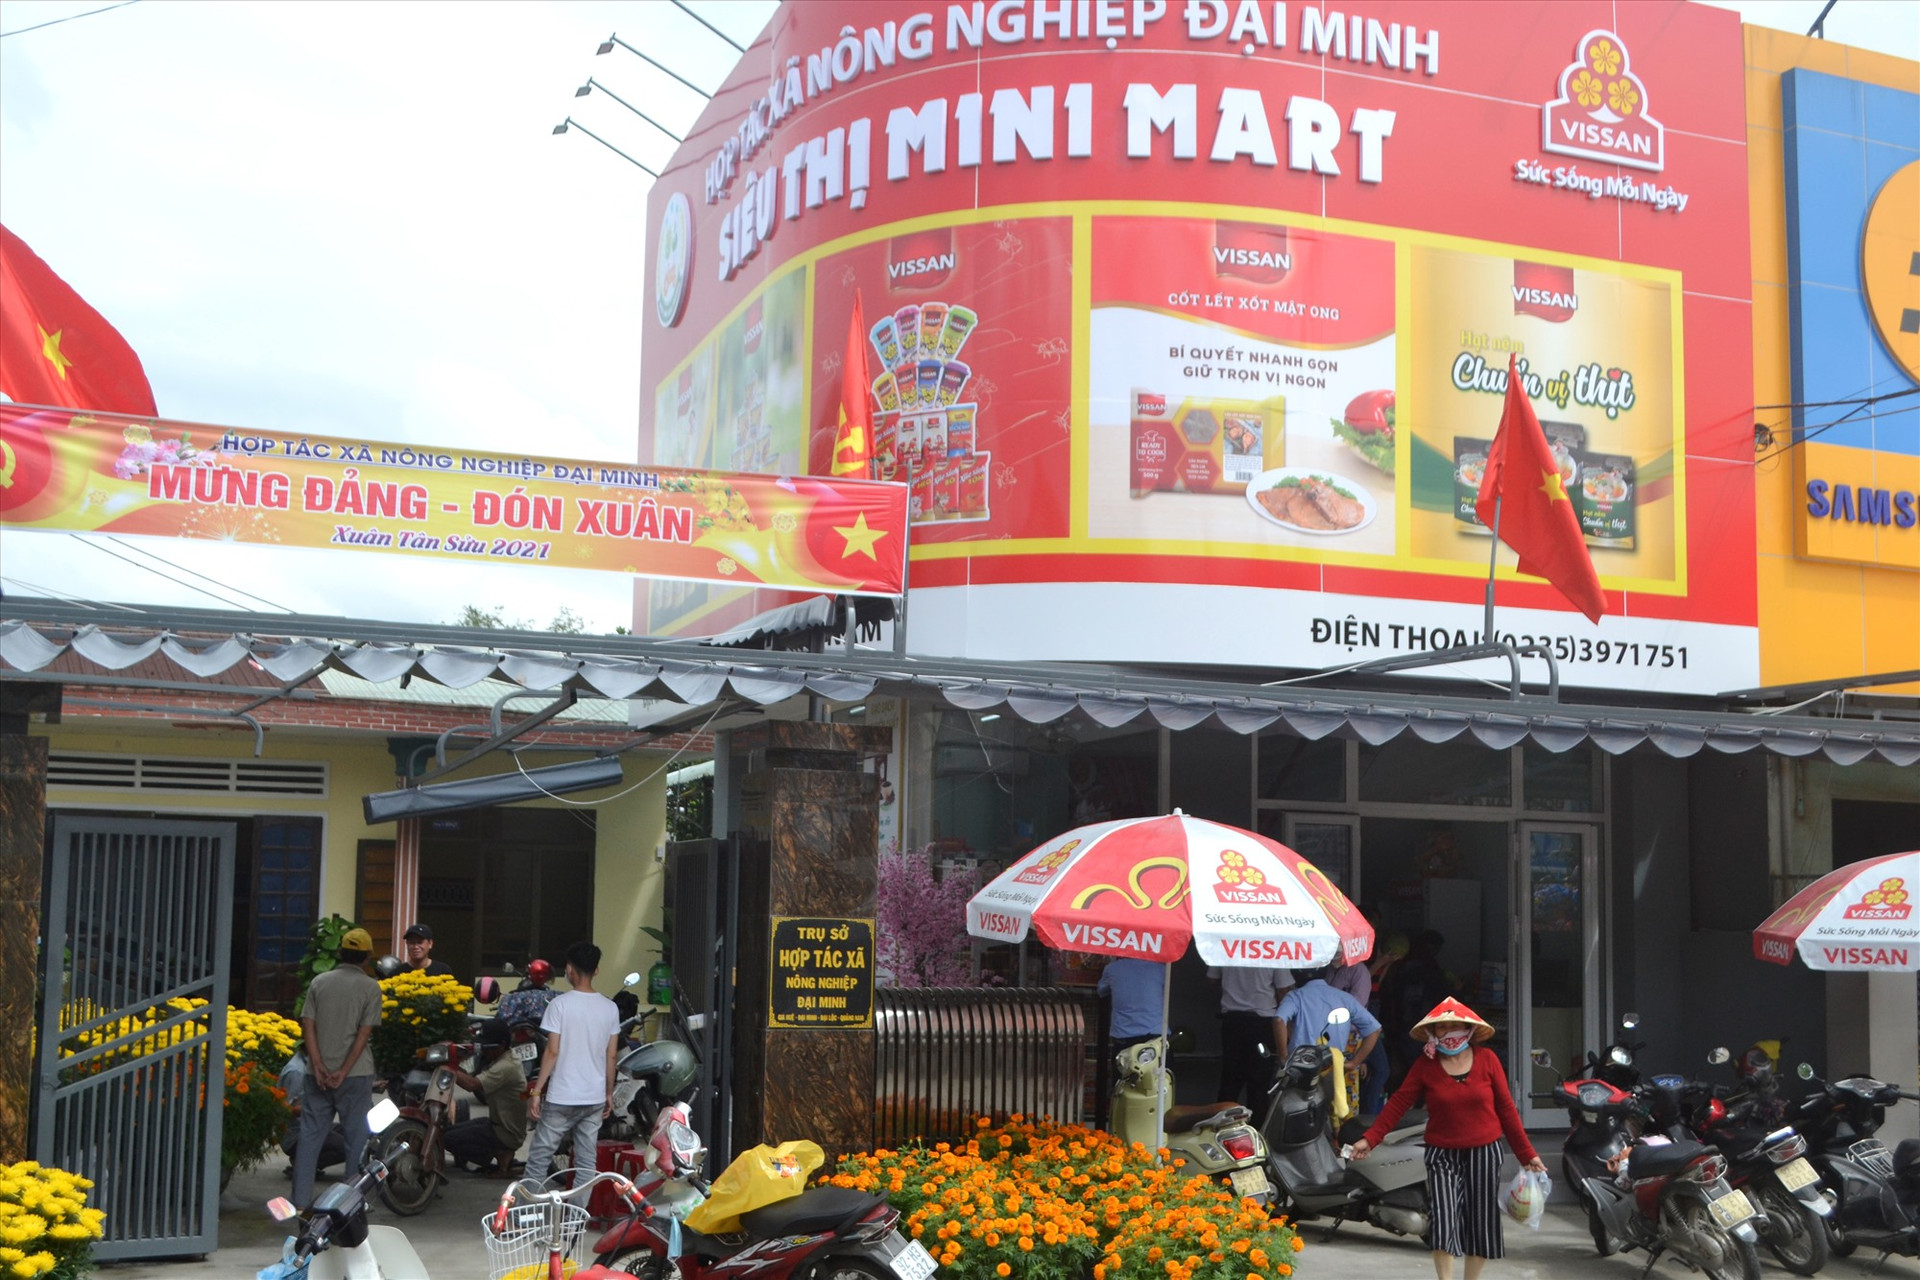 Siêu thị mini Mart của Hợp tác xã Nông nghiệp Đại Minh. Ảnh: CT